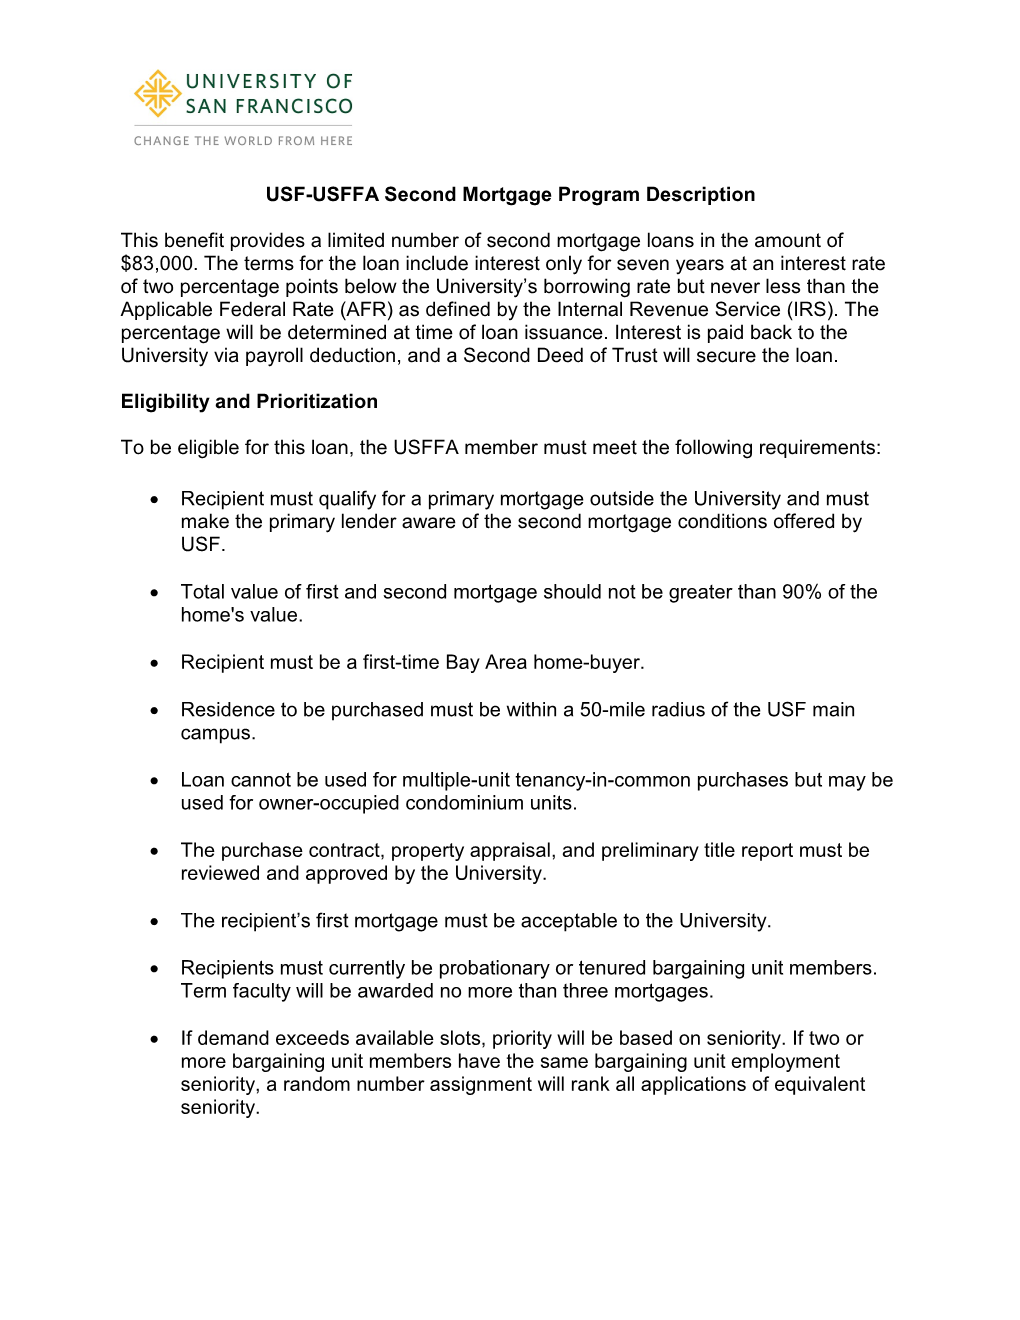 USFFA Second Mortgage Program Description